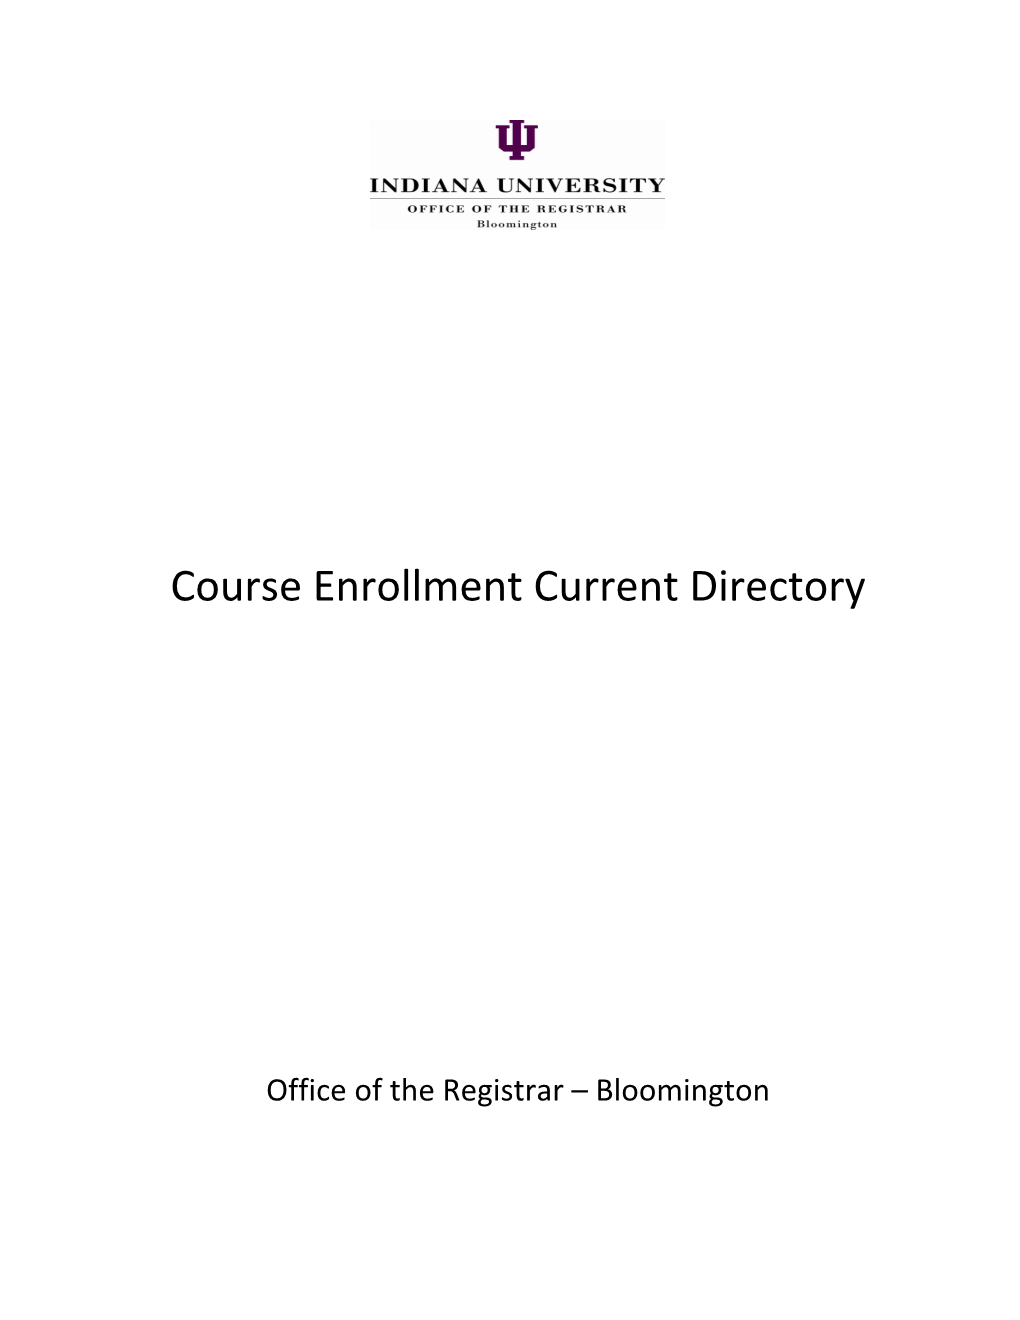 Course Enrollment Current Directory Handout